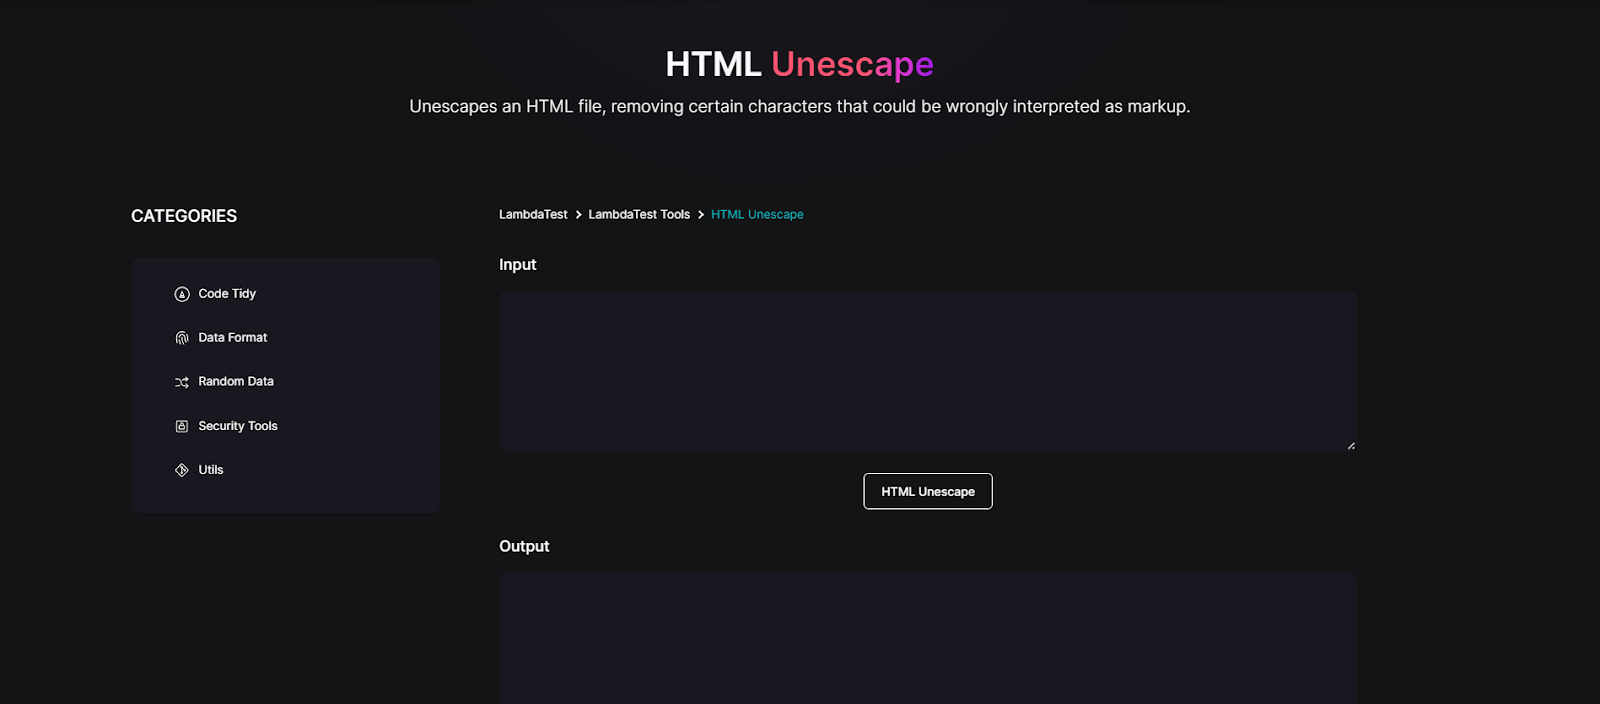 HTML Unescape